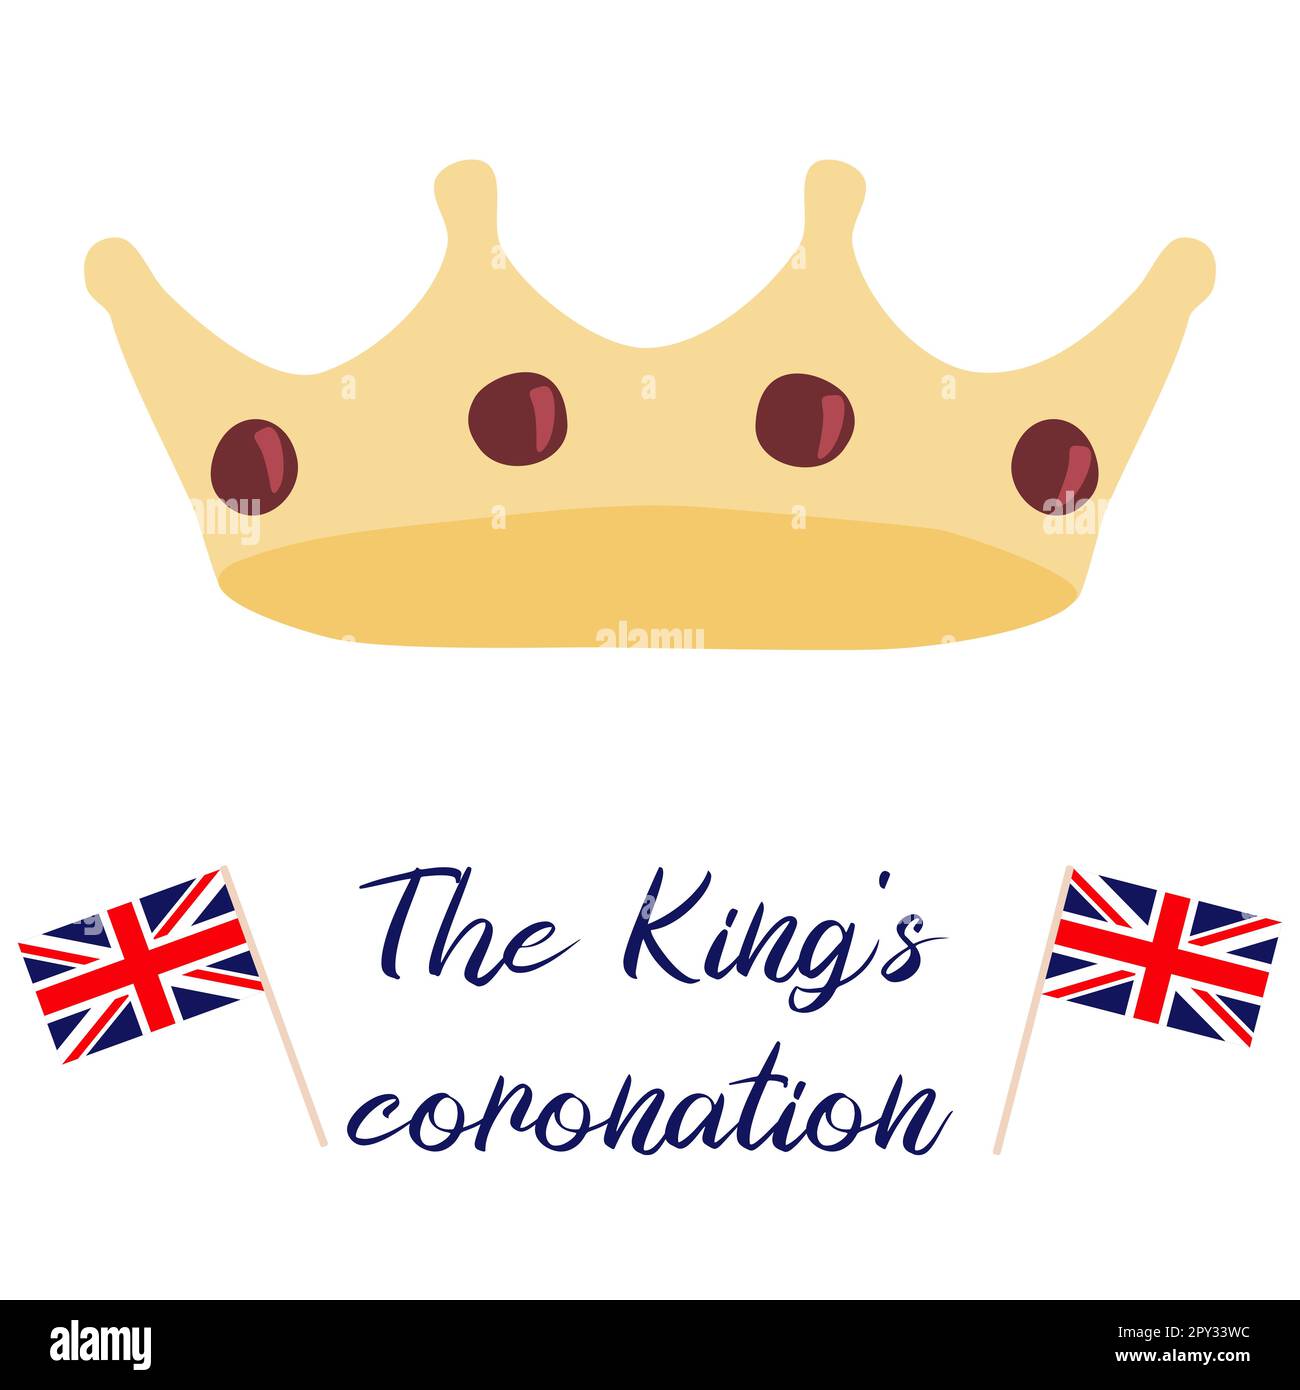 Poster für König Karl III. Krönung mit britischer Flagge und Krone, Grußkarte zur Feier der Krönung von Prinz Karl von Wales wird König von England, Vektorbild Stock Vektor